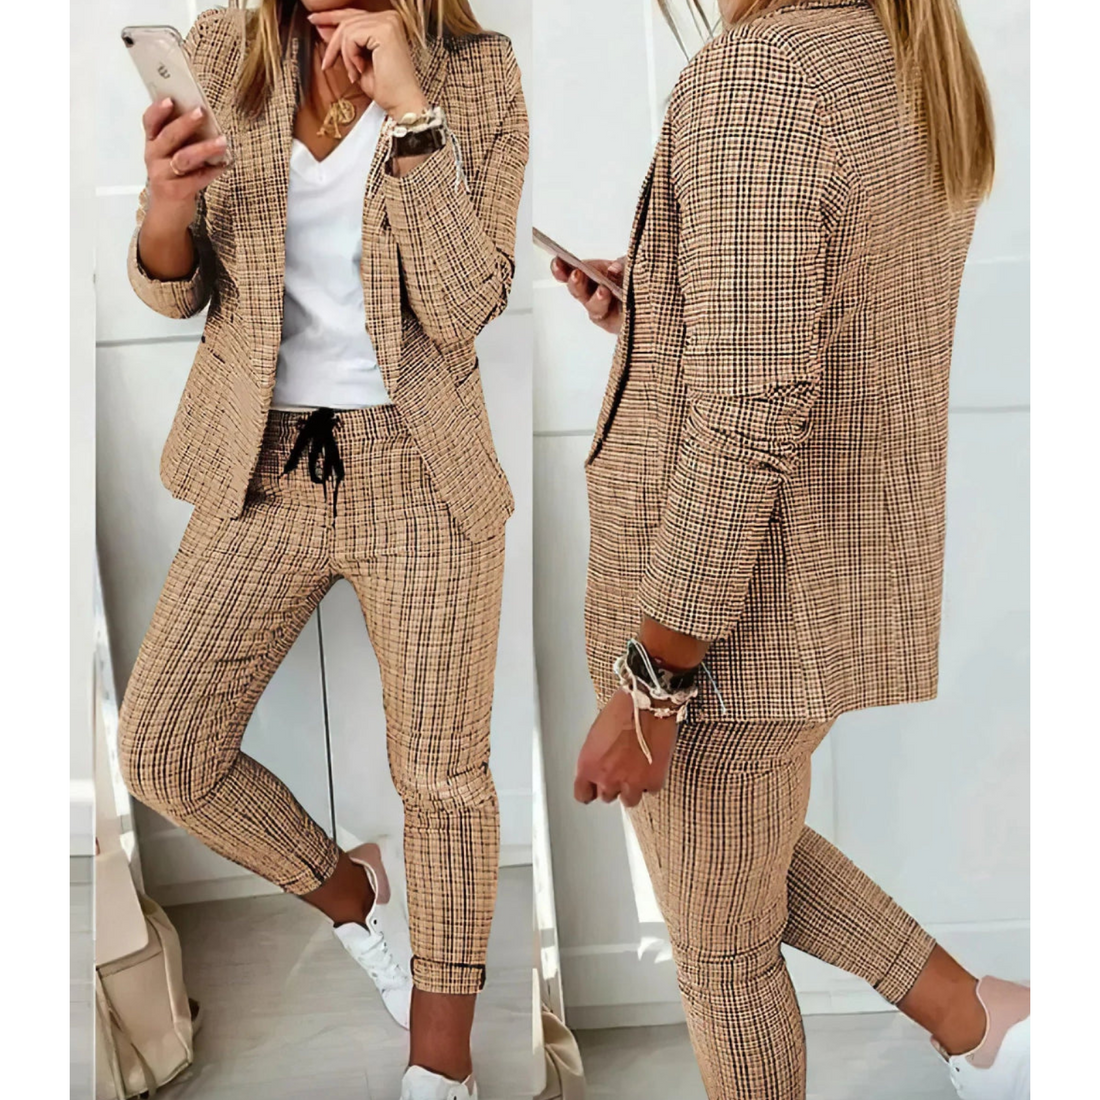 Jane - Elegant Women's Business Suit Set